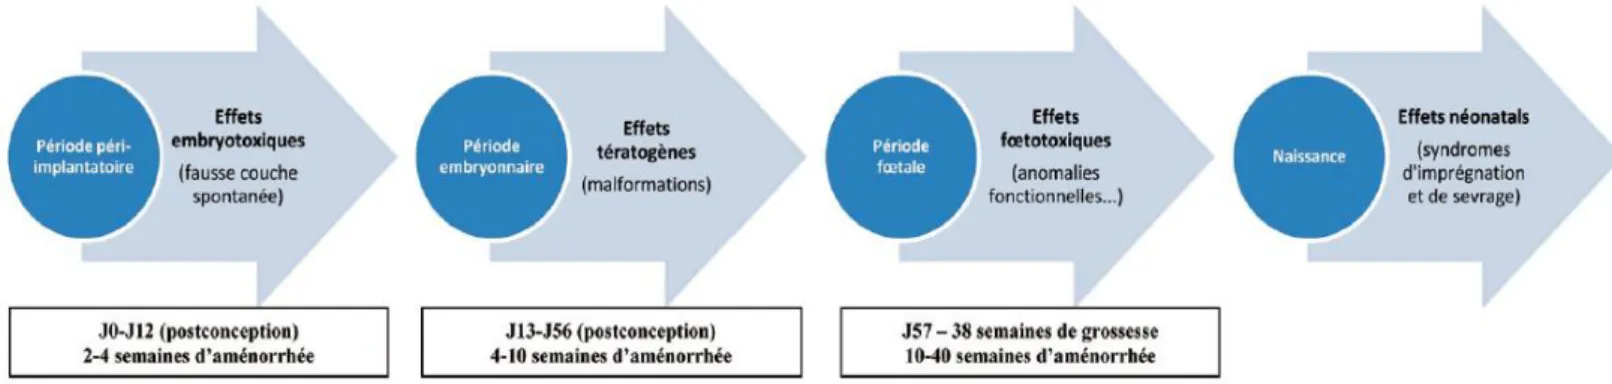 Figure 2 : Effets potentiels d’un médicament en fonction de la période de développement (3) 